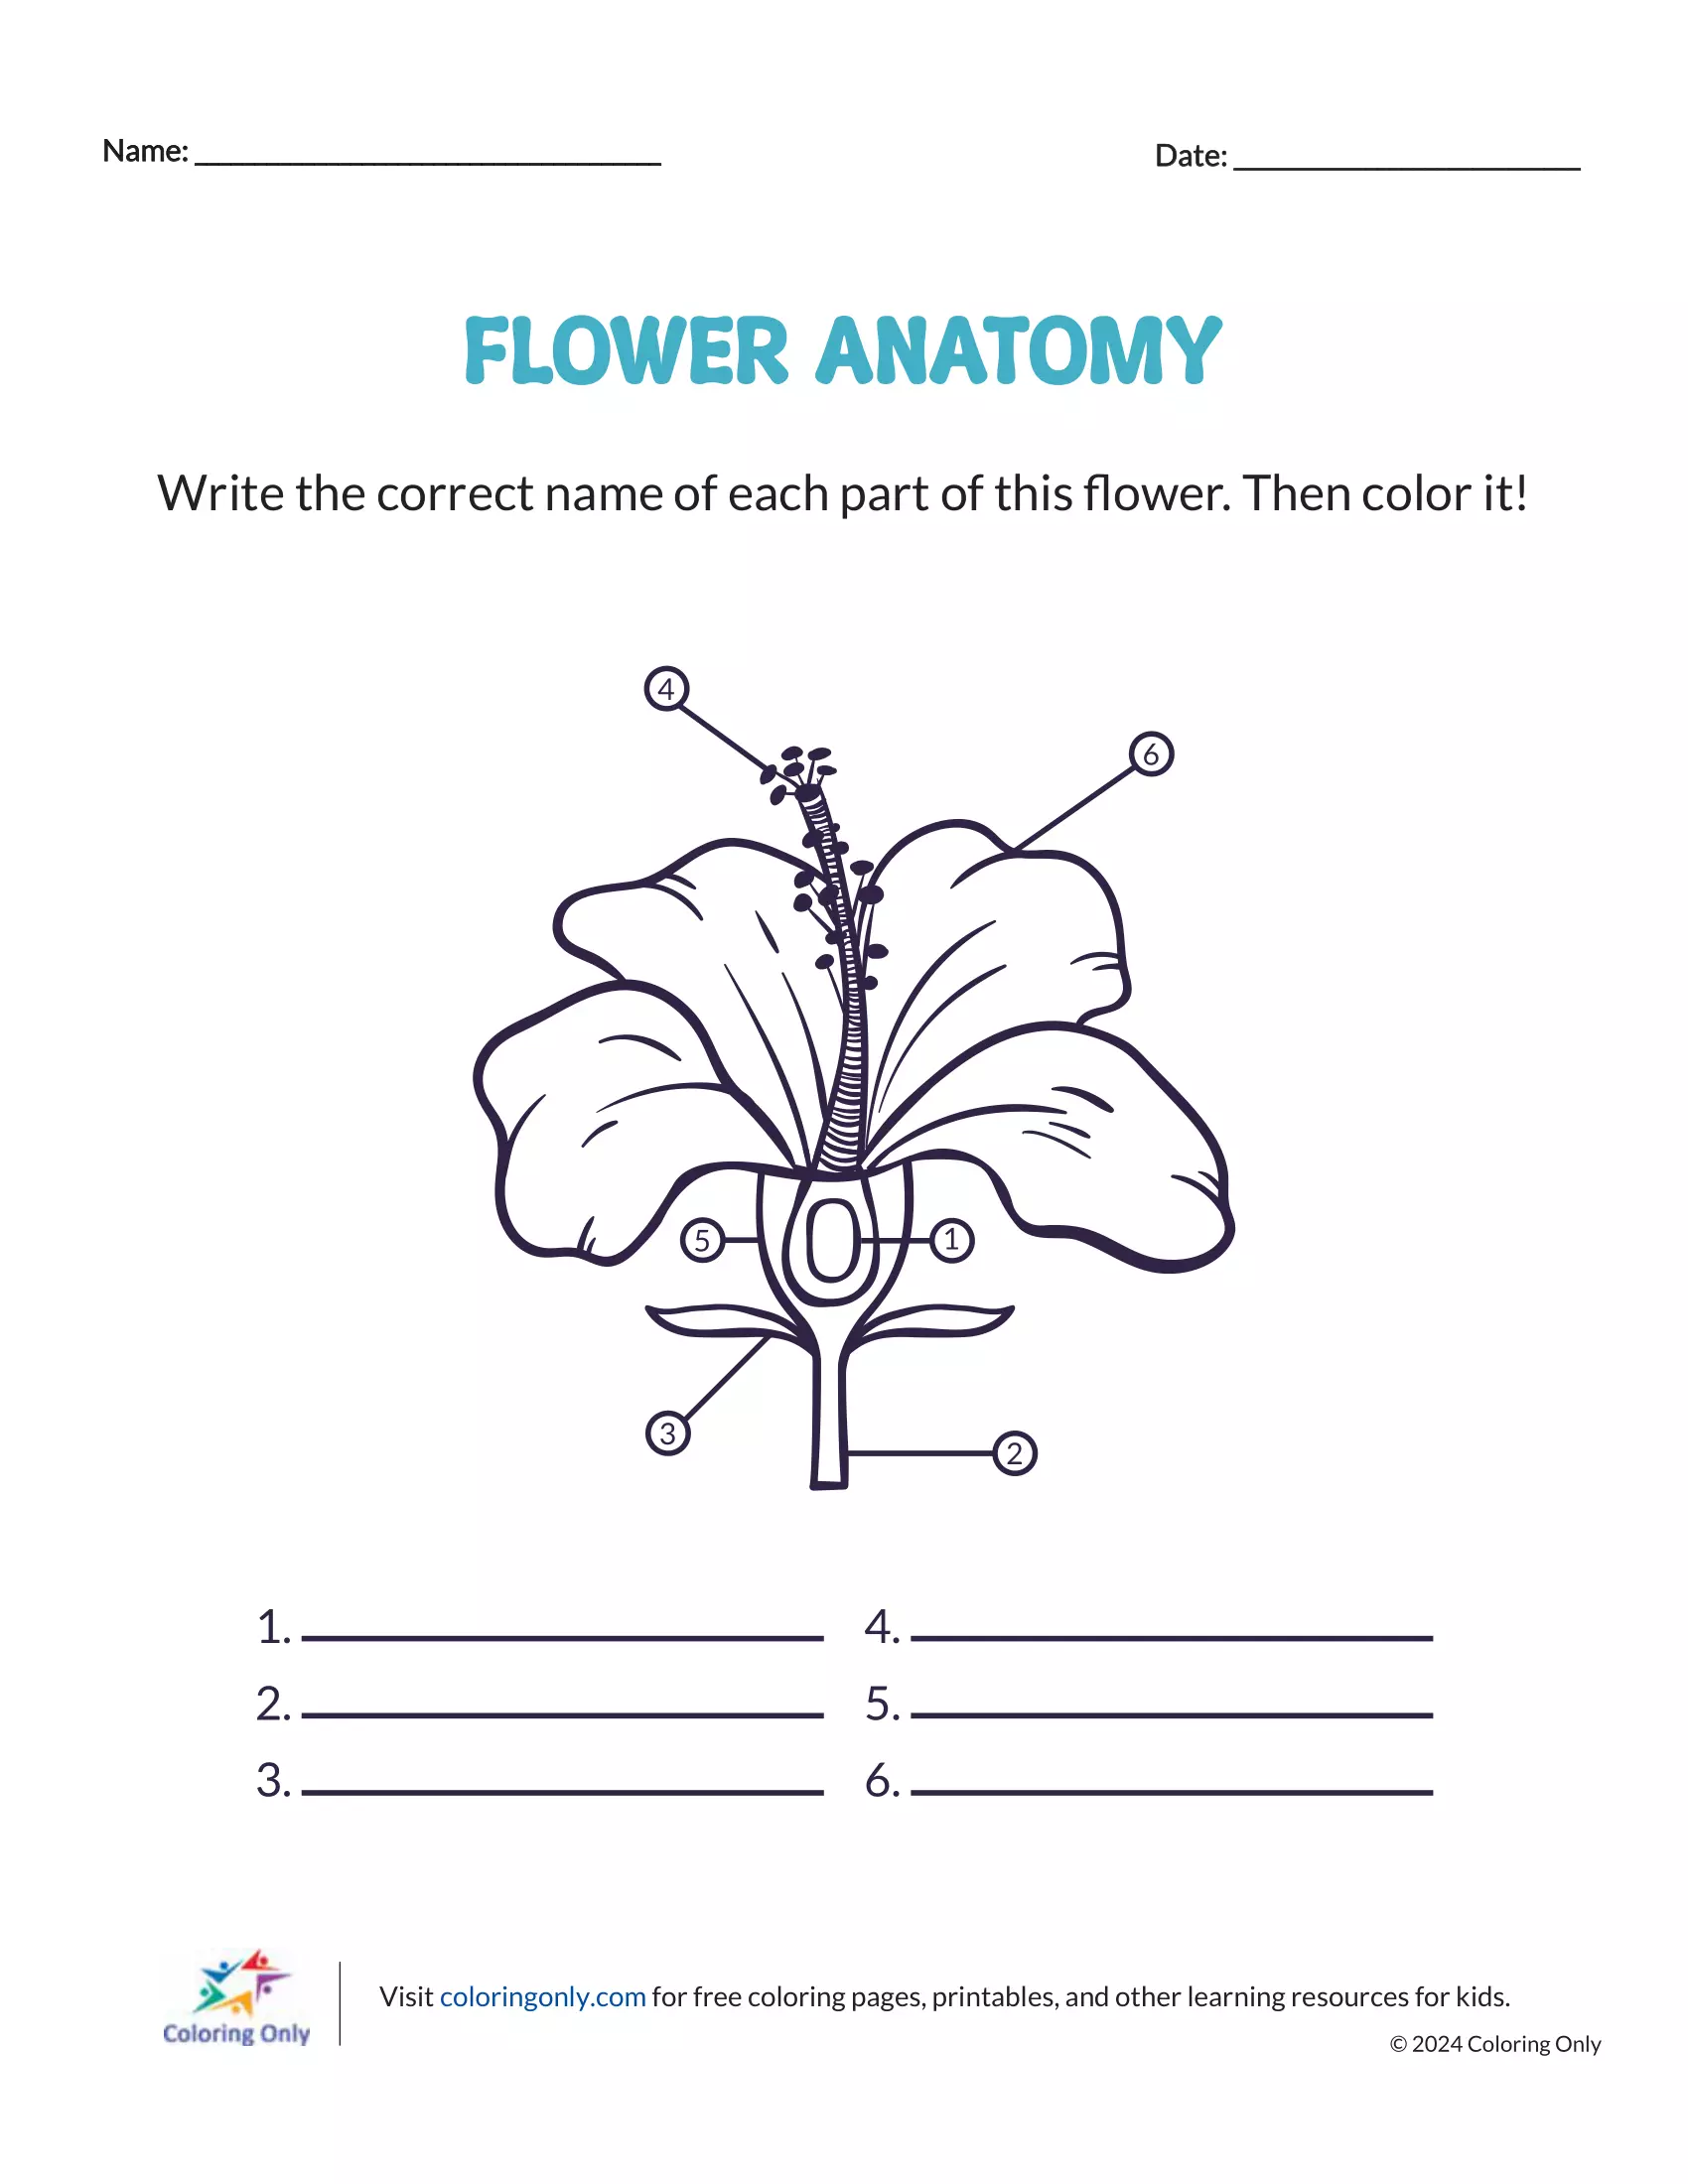 Flower Anatomy Free Printable Worksheet